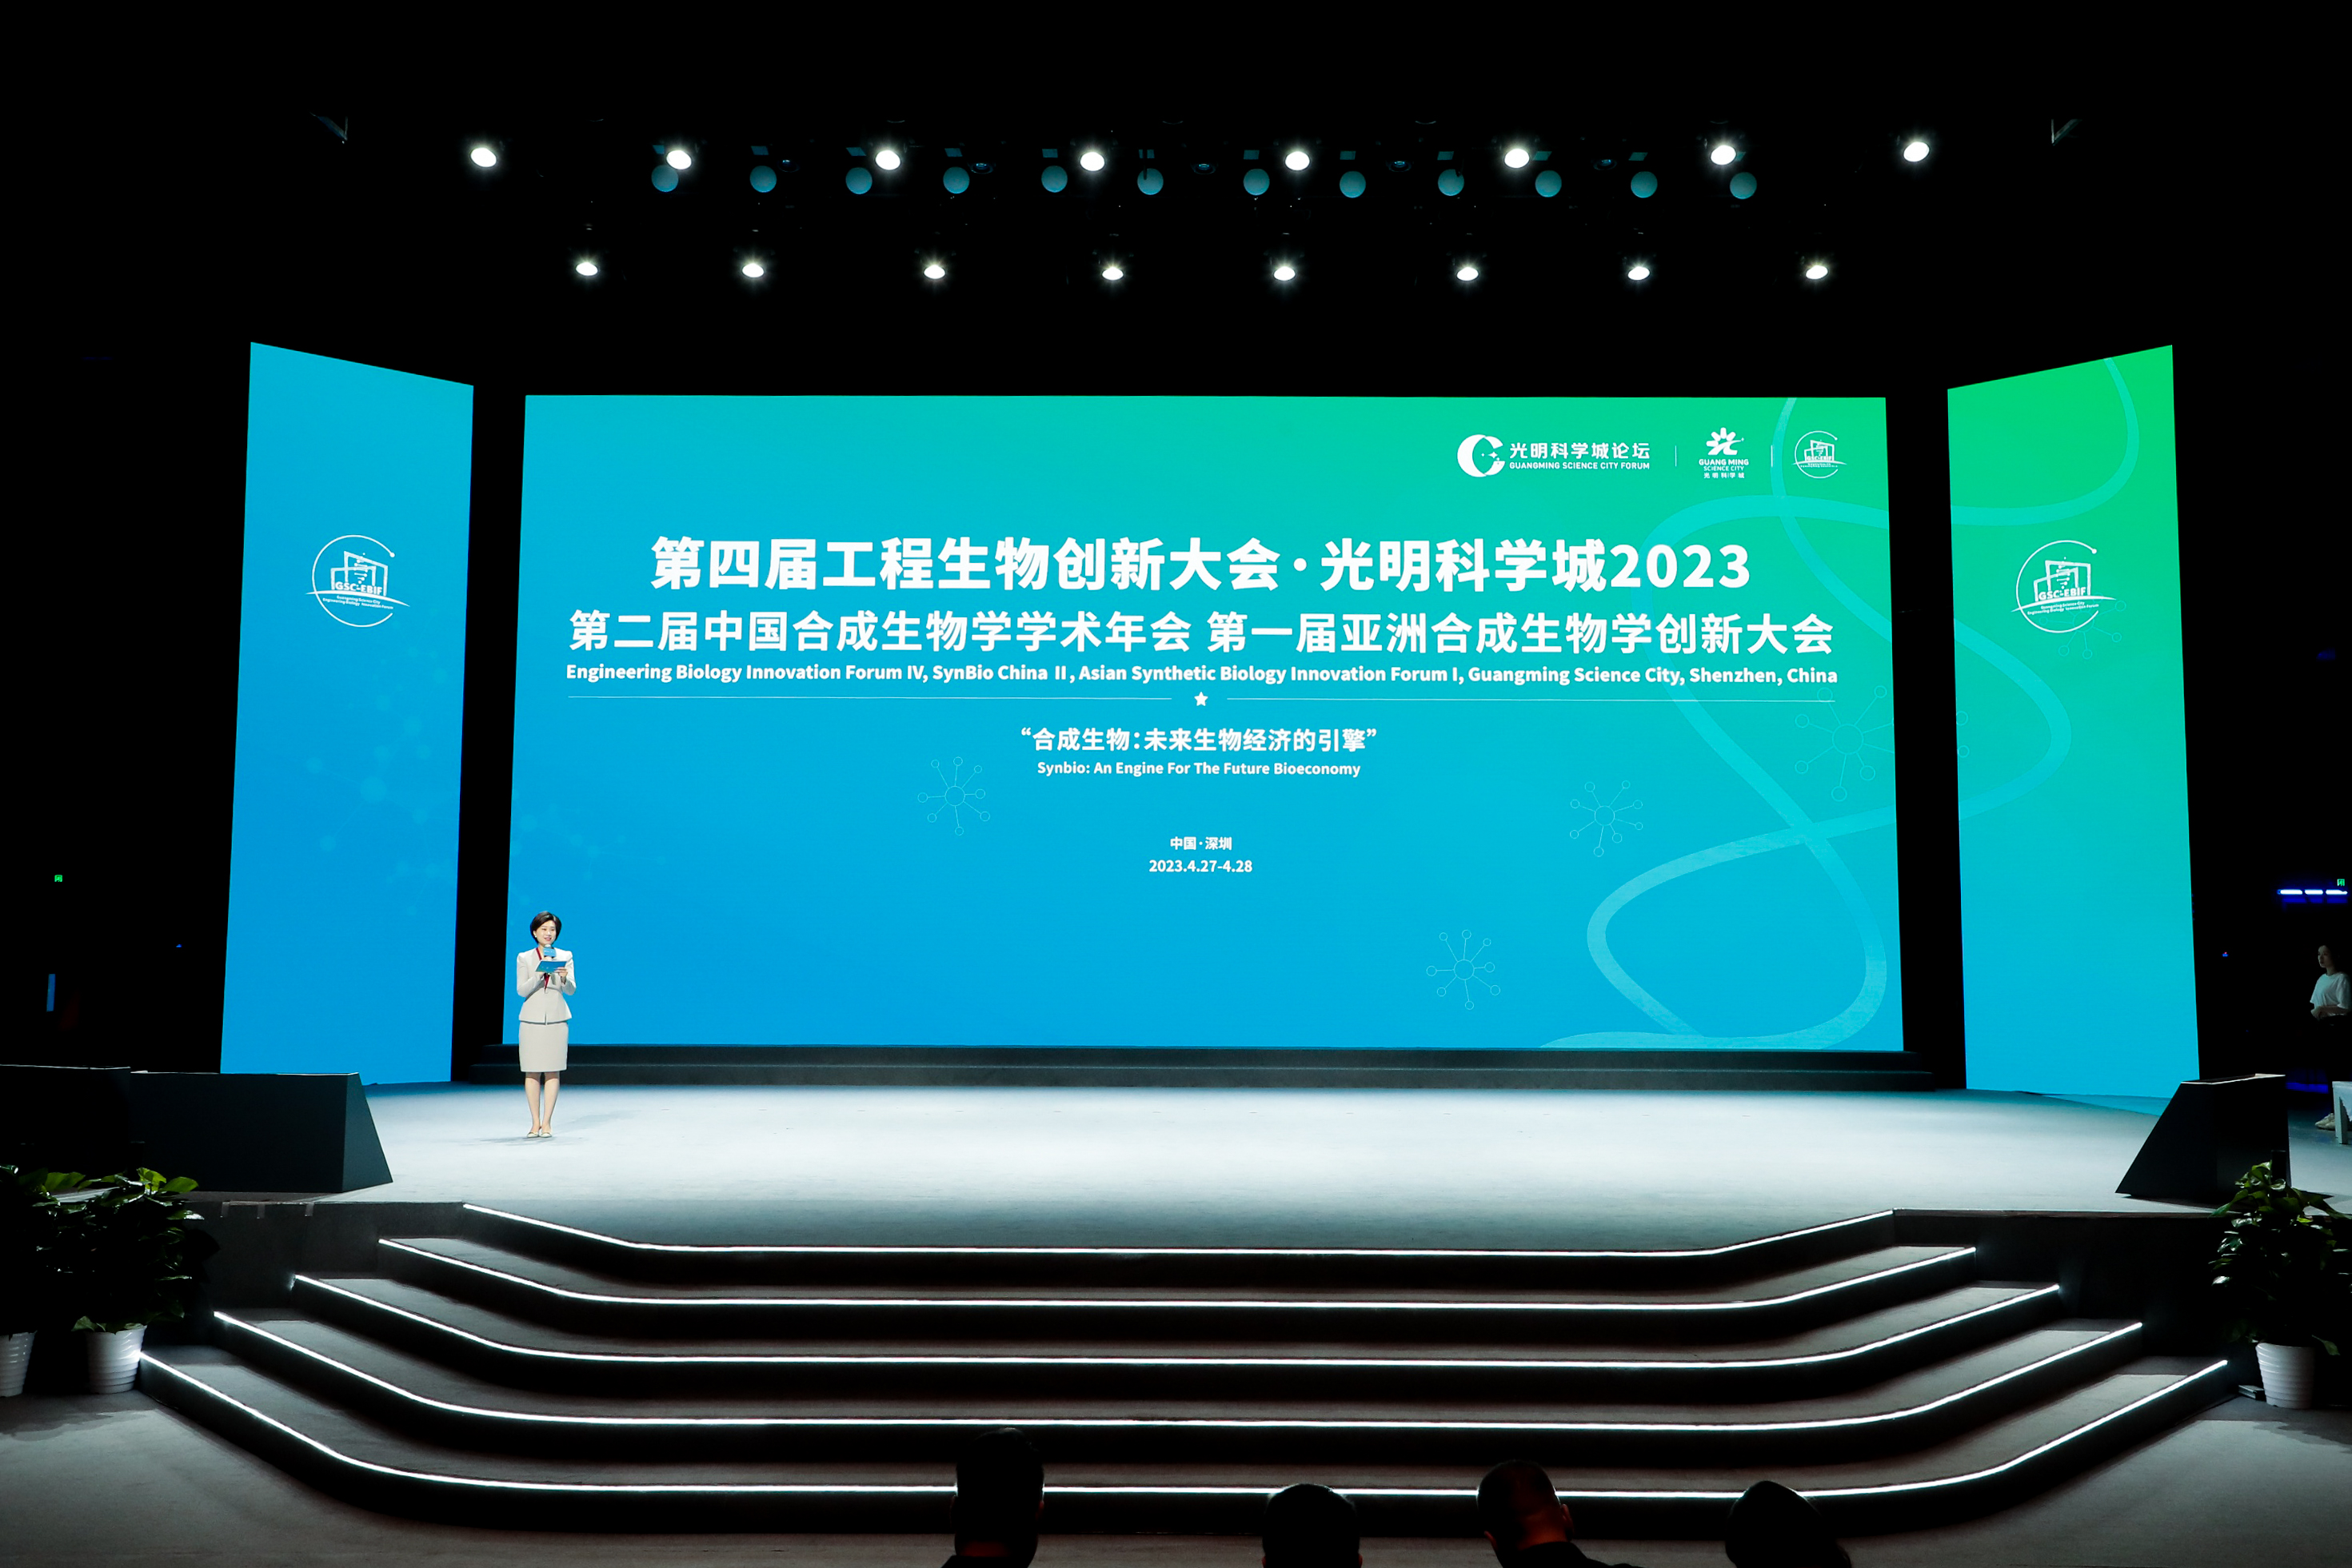 引领生物制造新革命，打造生物经济新引擎 第四届工程生物创新大会、第二届中国合成生物学学术年会、第一届亚洲合成生物学创新大会在深圳成功举办